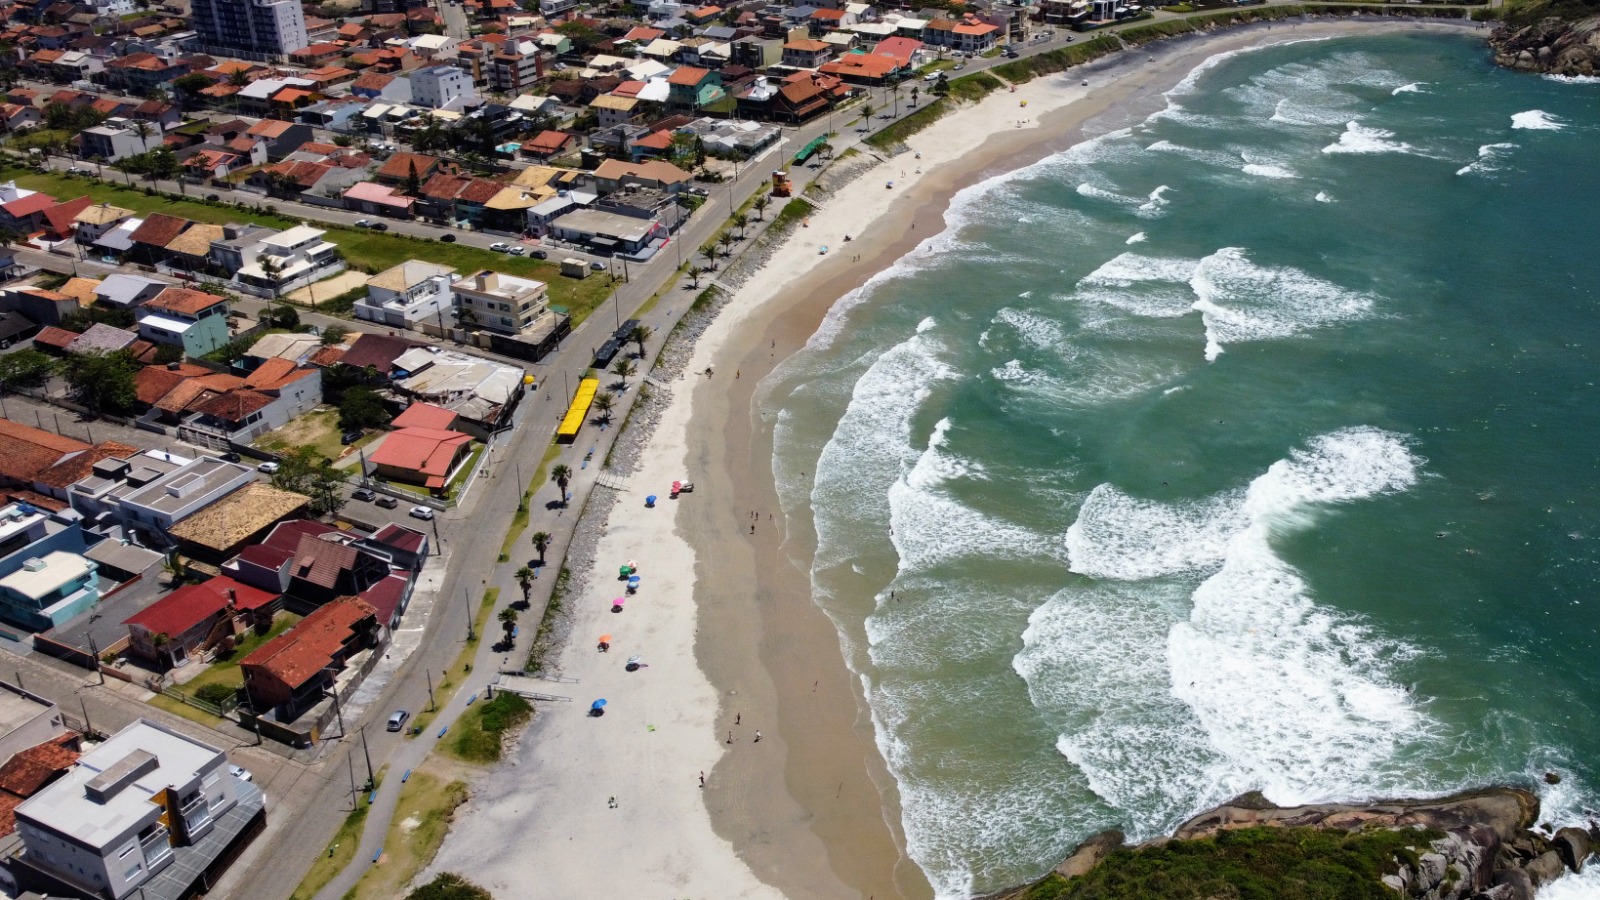 Balneabilidade das praias de São Francisco do Sul é considerada alta